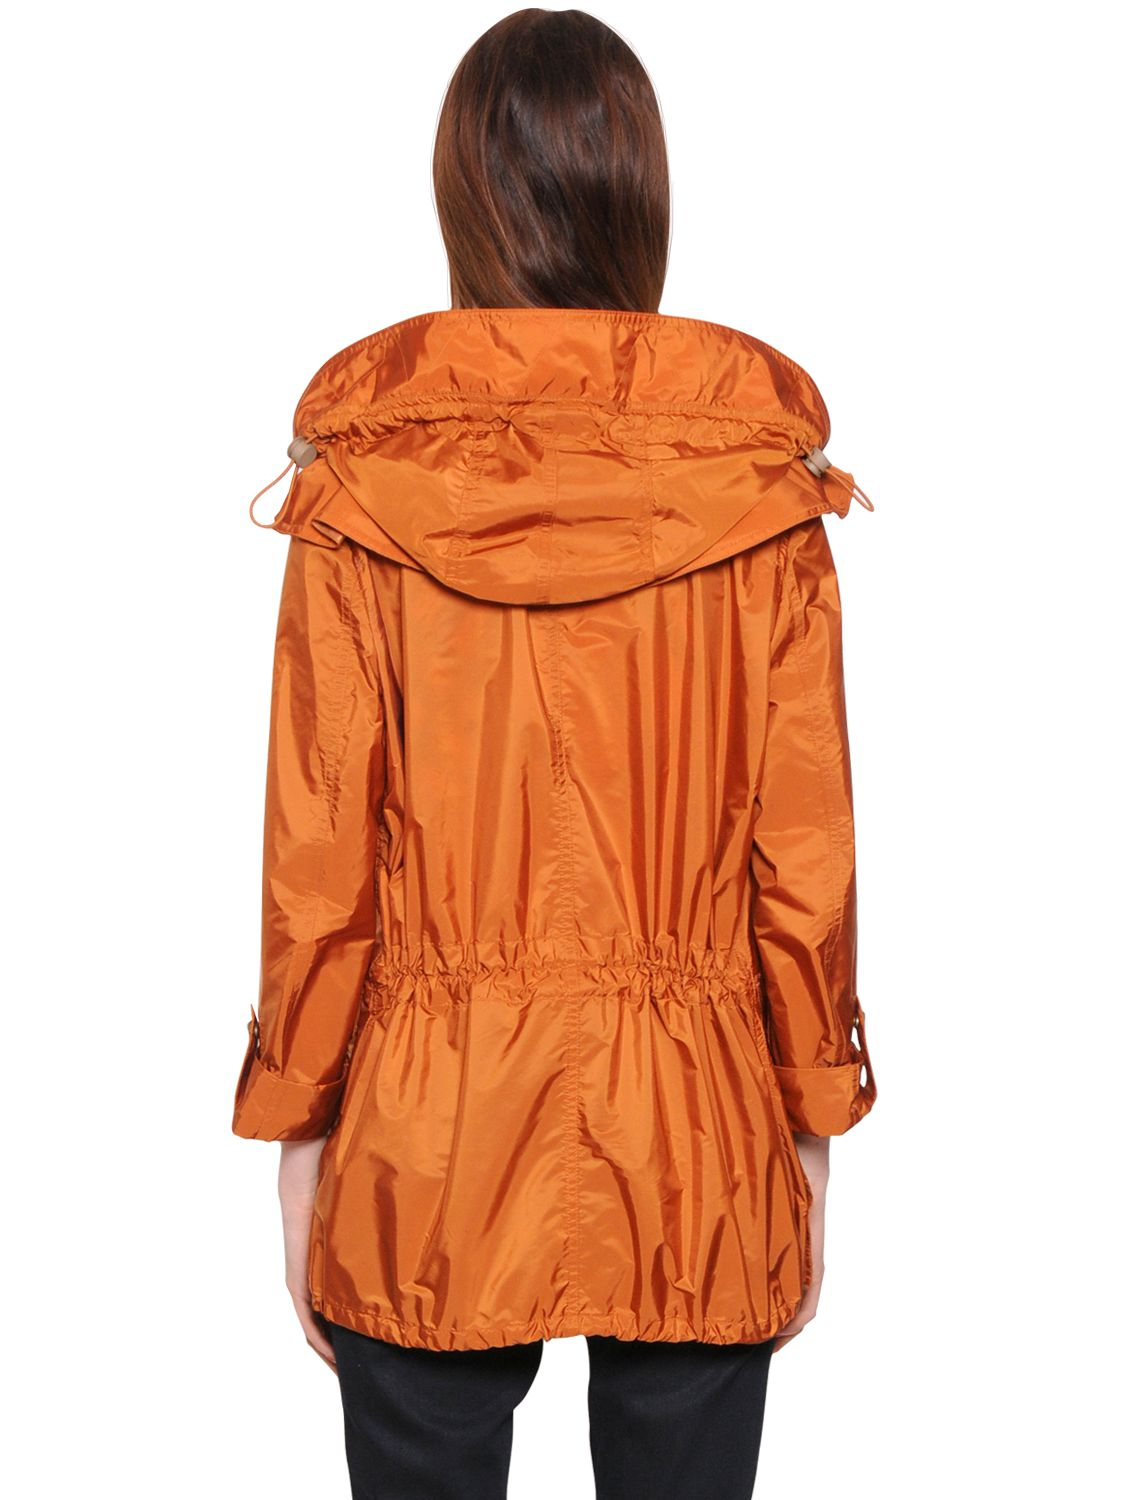 Burberry Brit Hooded Nylon Windbreaker Jacket in Orange - Lyst